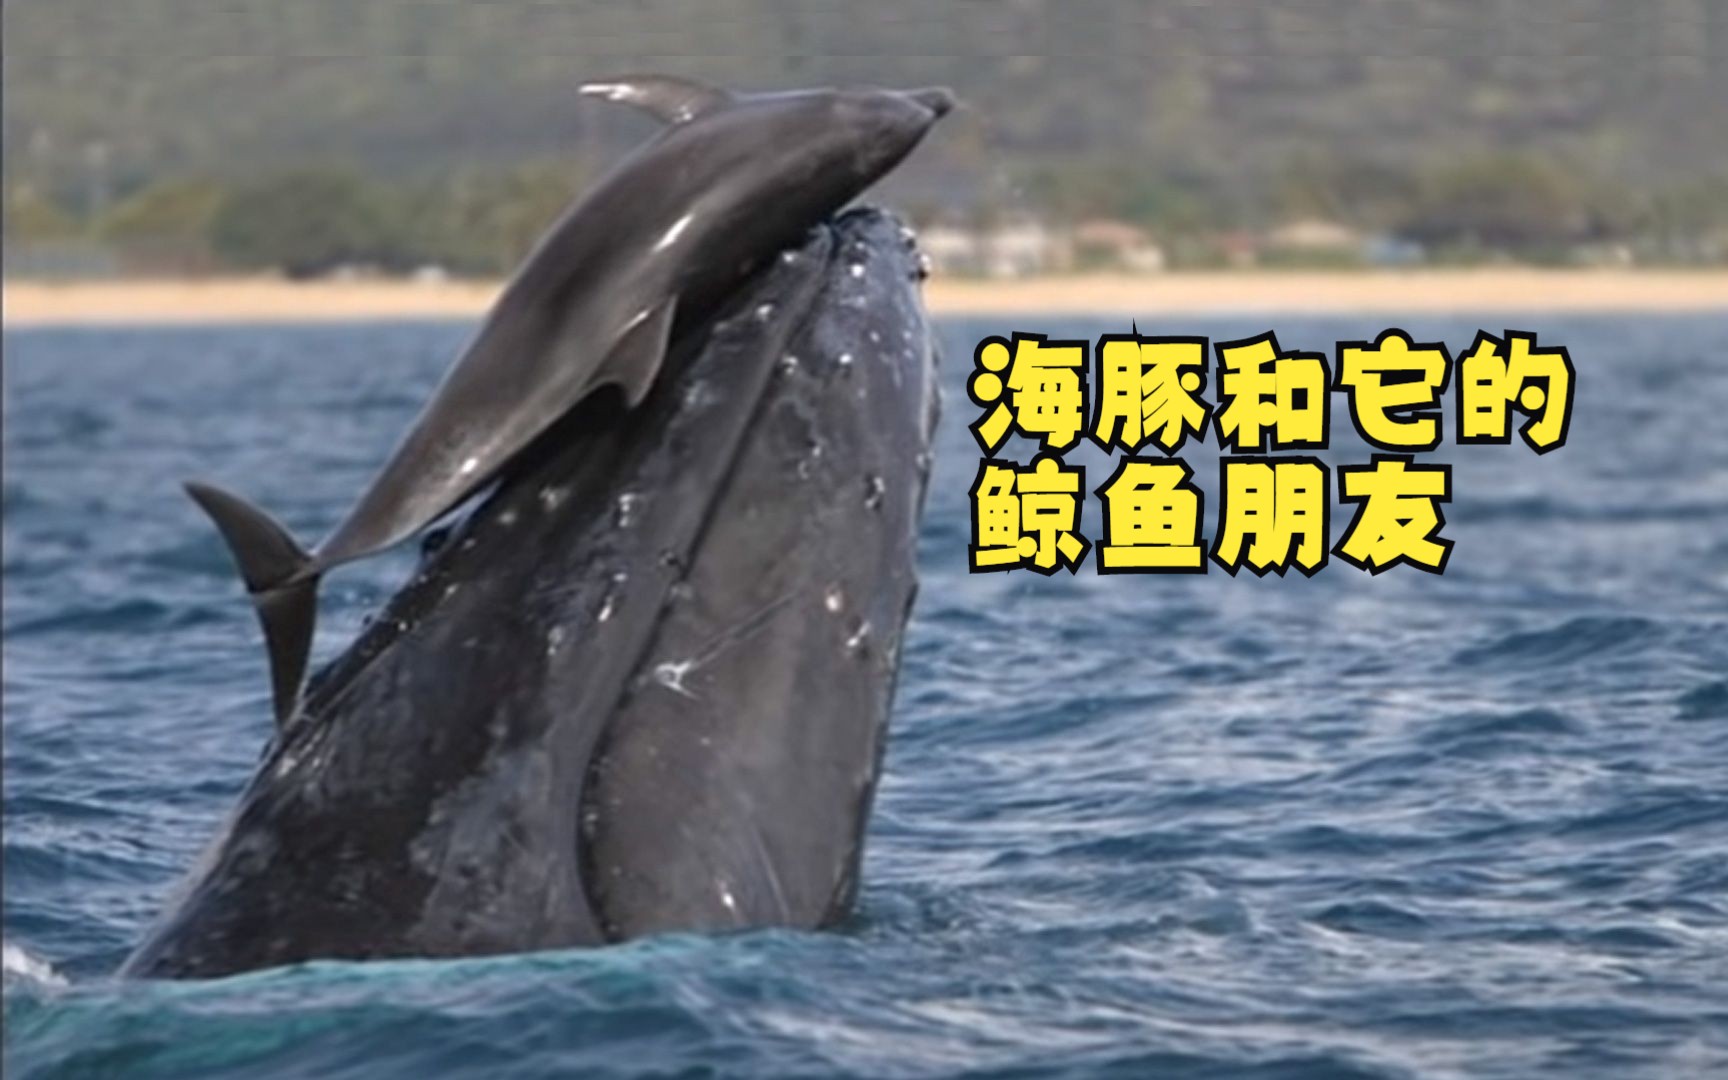 一头座头鲸和海豚玩耍,海豚和其他鲸鱼能成为朋友